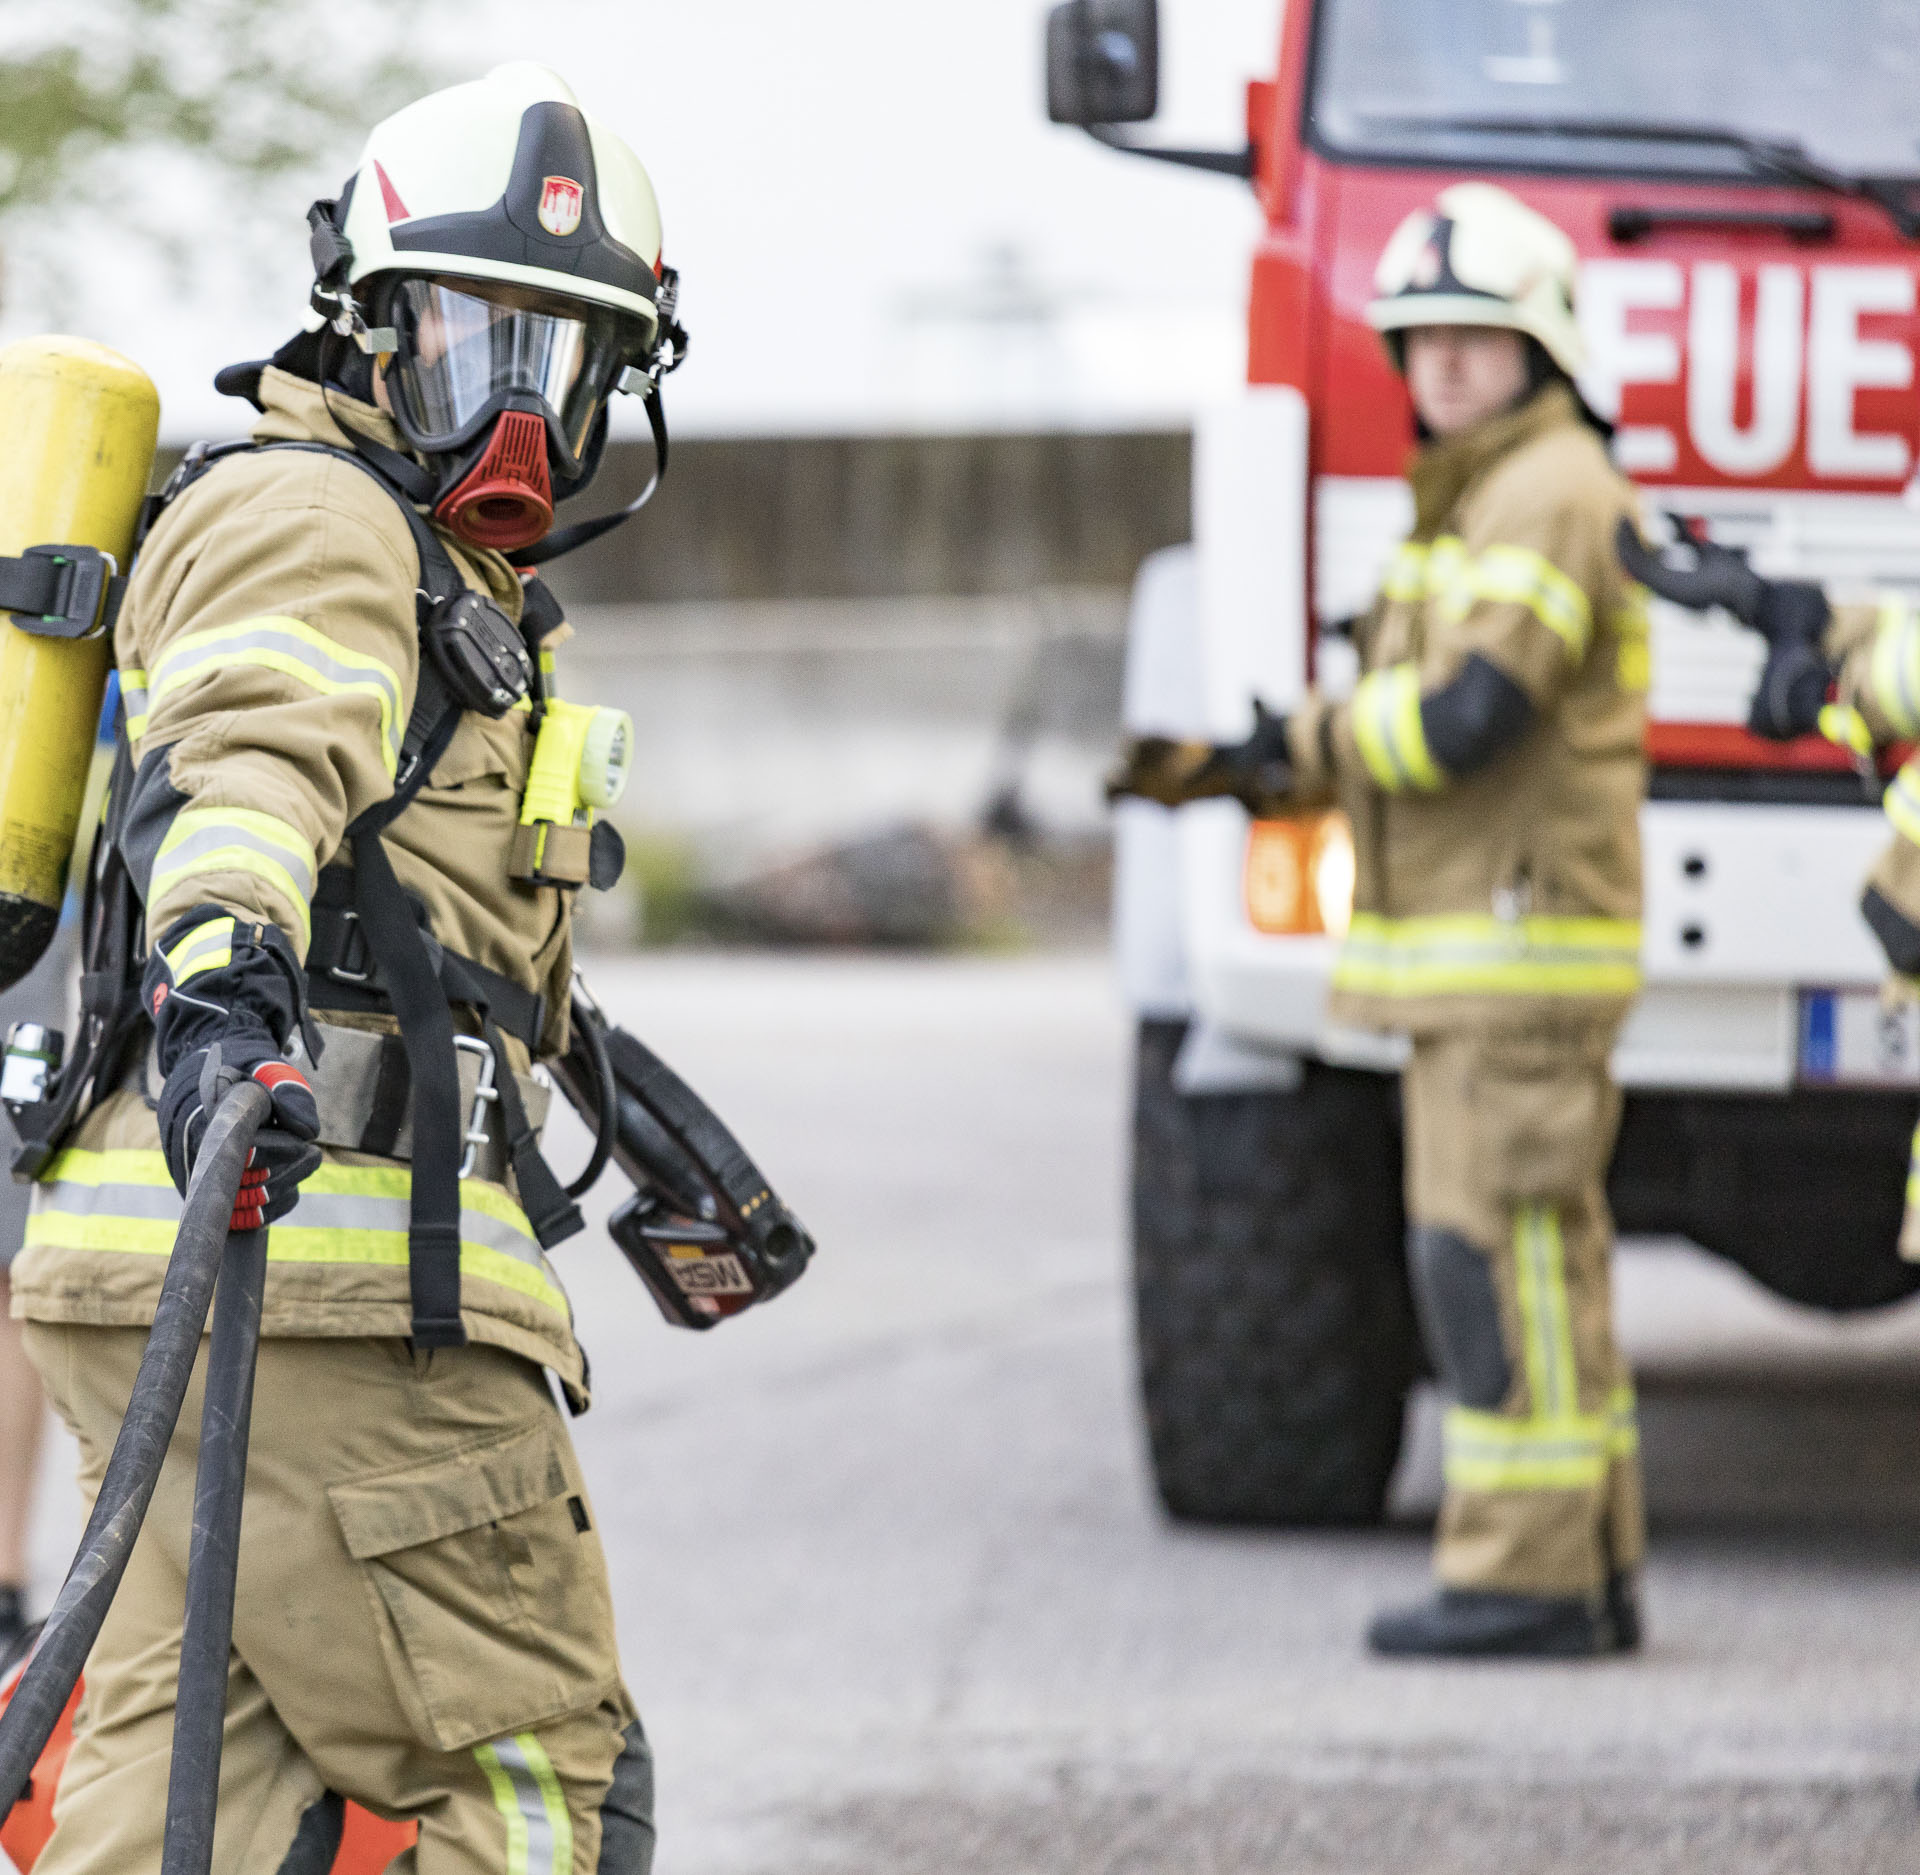 Ein Bild, das Feuerwehrmann, draußen, Helm, Notdienst enthält.

Automatisch generierte Beschreibung